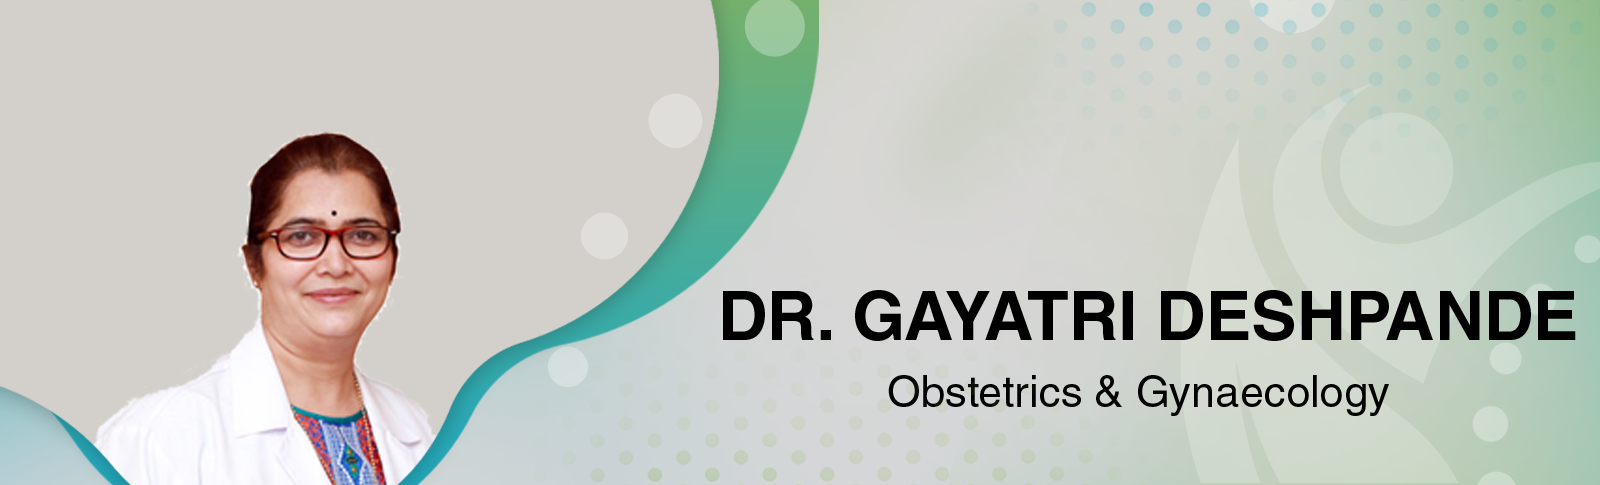 Dr. Gayatri Deshpande